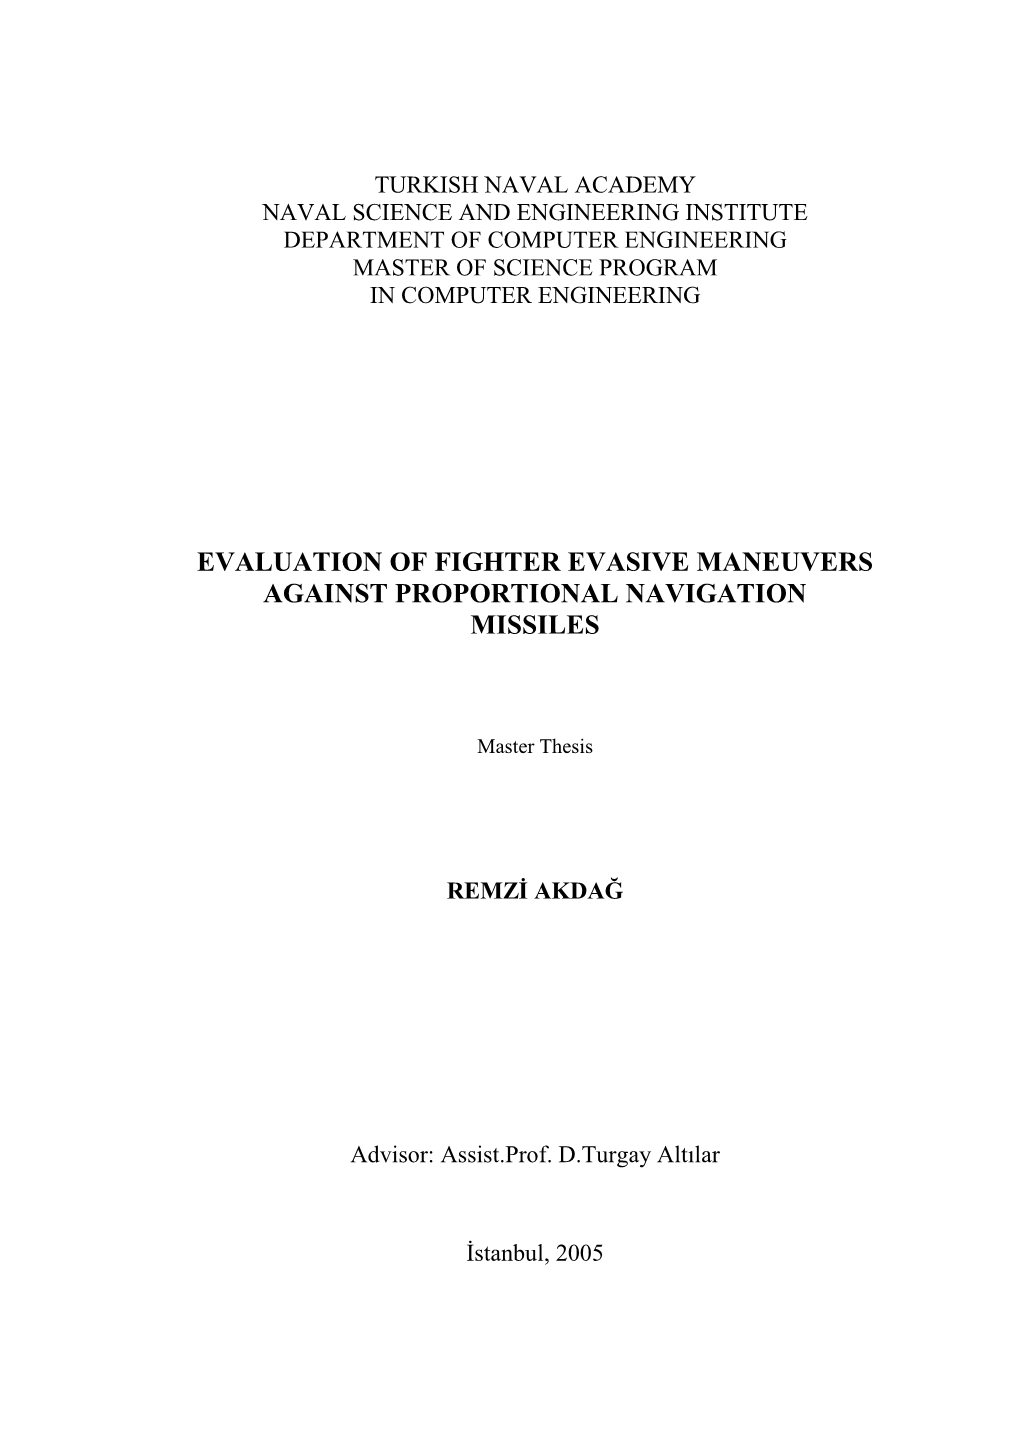 Evaluation of Fighter Evasive Maneuvers Against Proportional Navigation Missiles